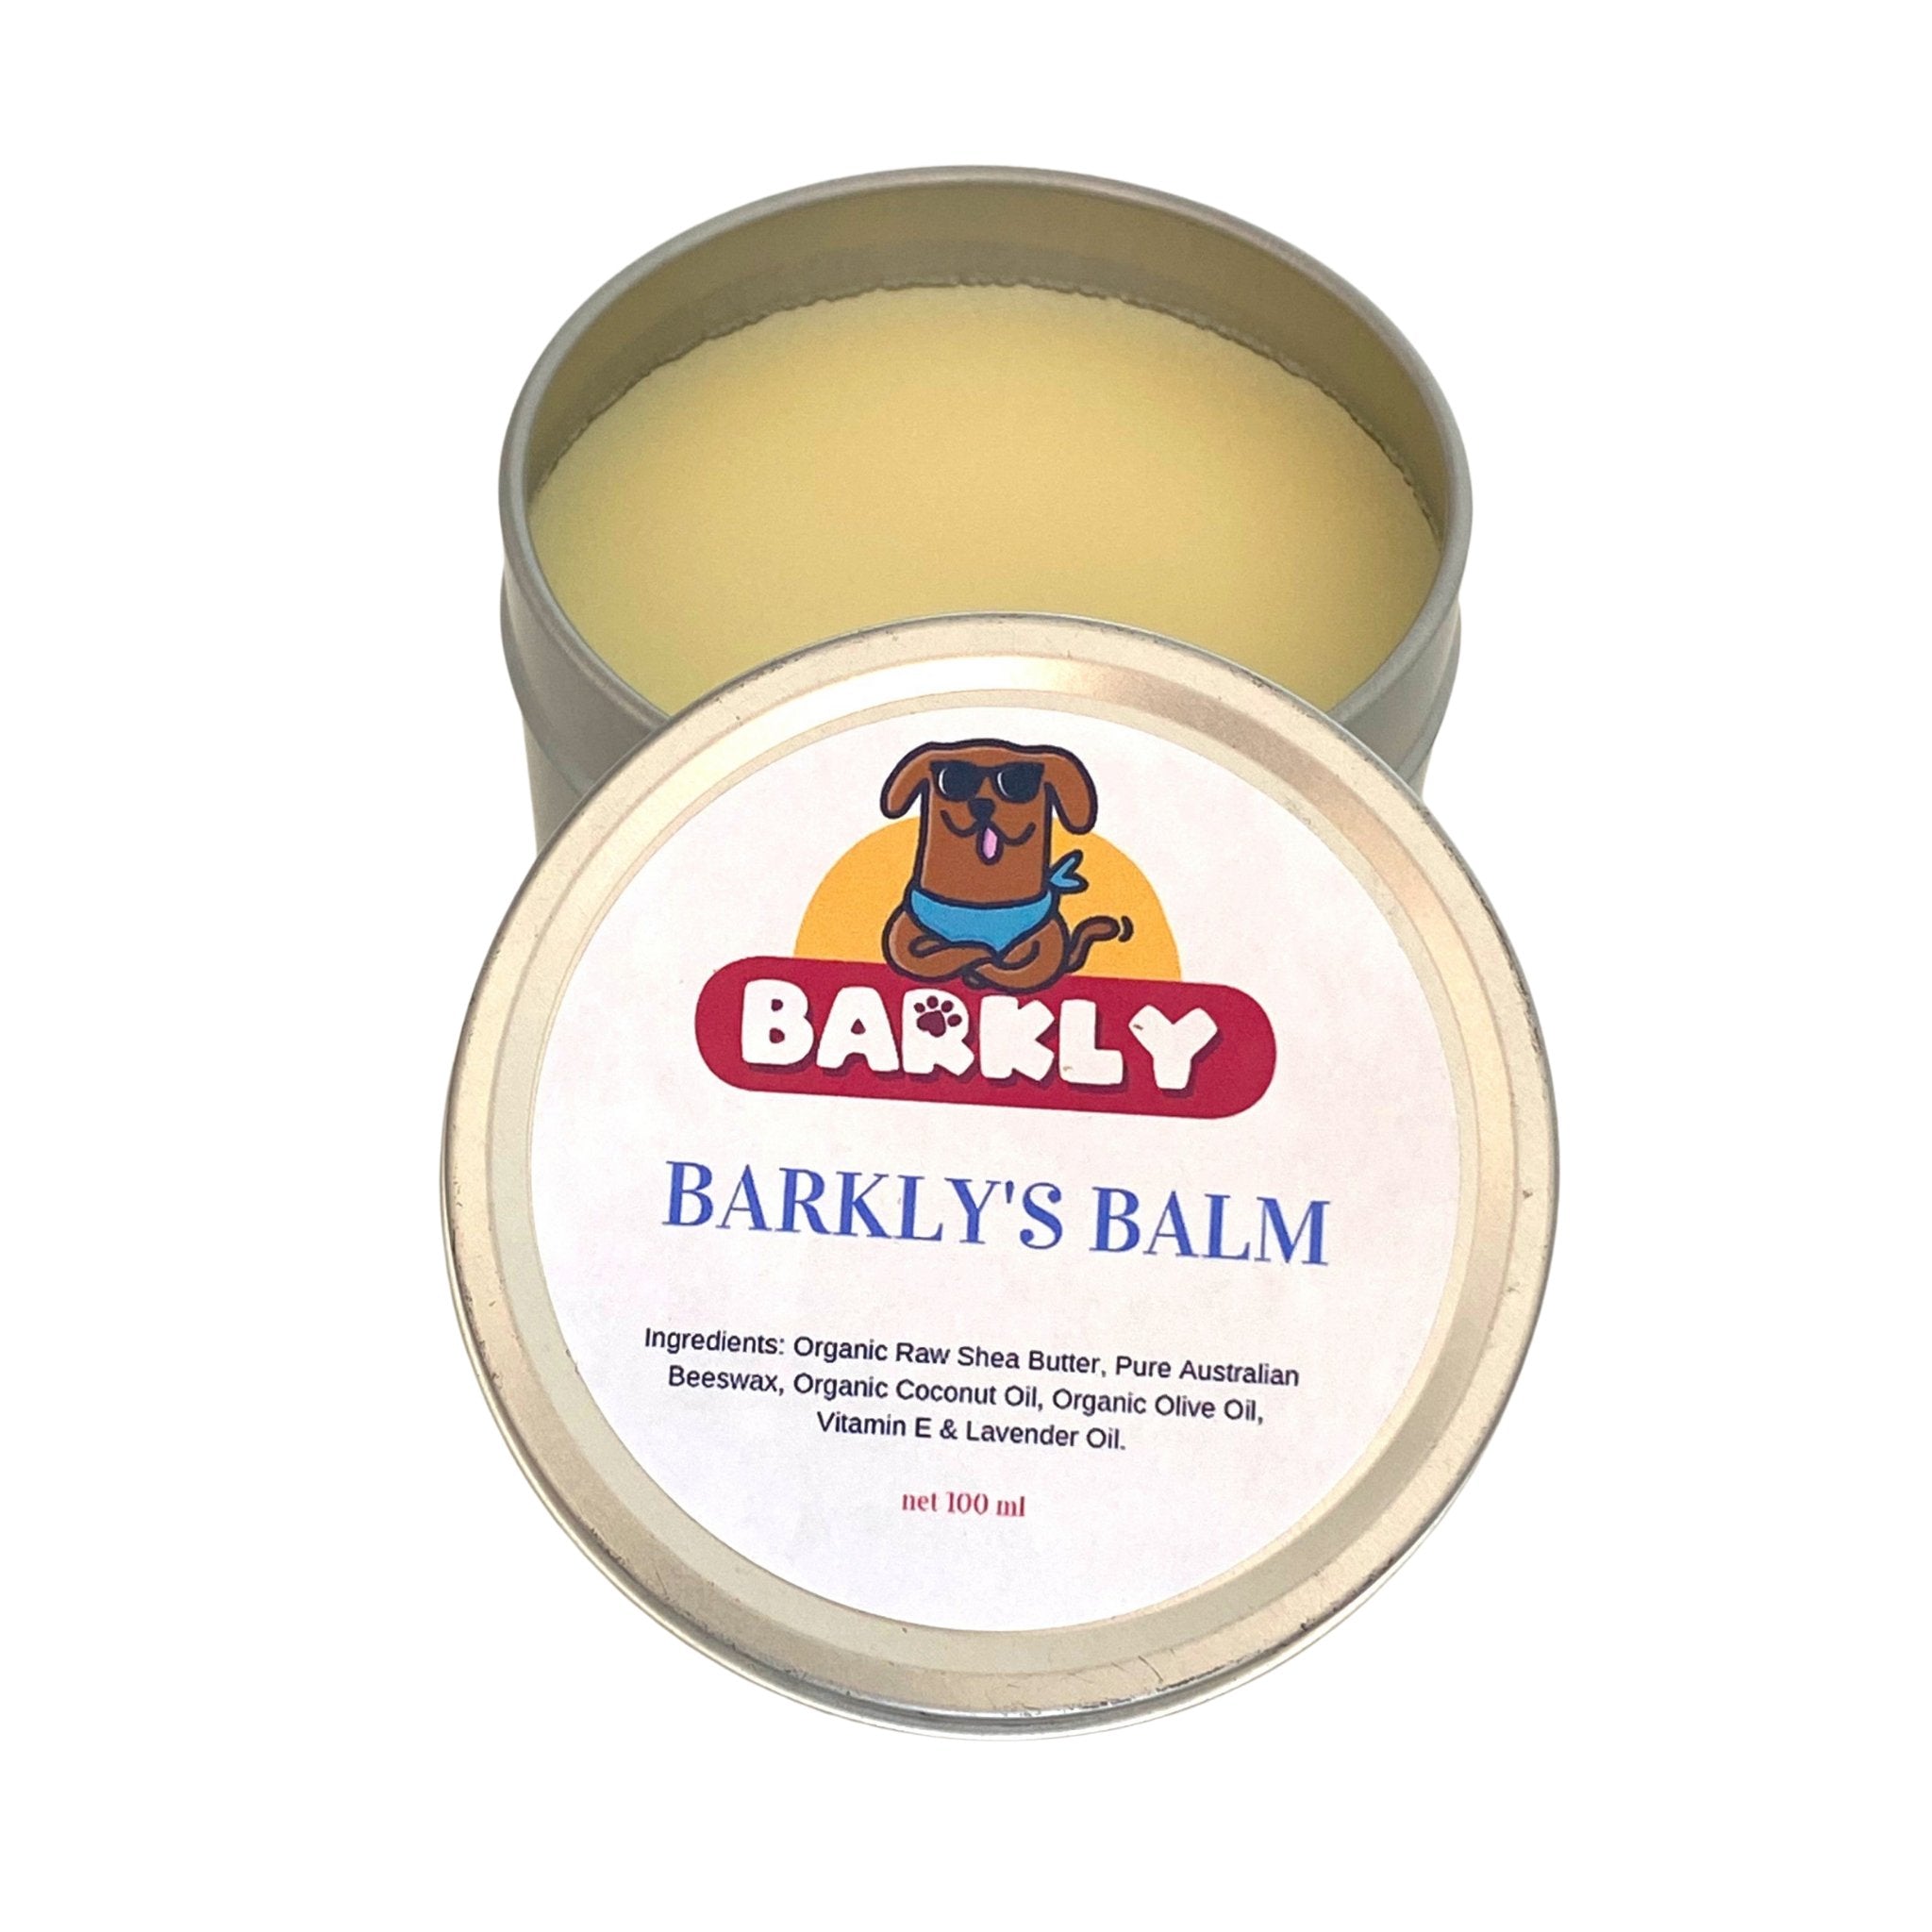 Barkly's Dog Balm - The Dog Shop Warners Bay